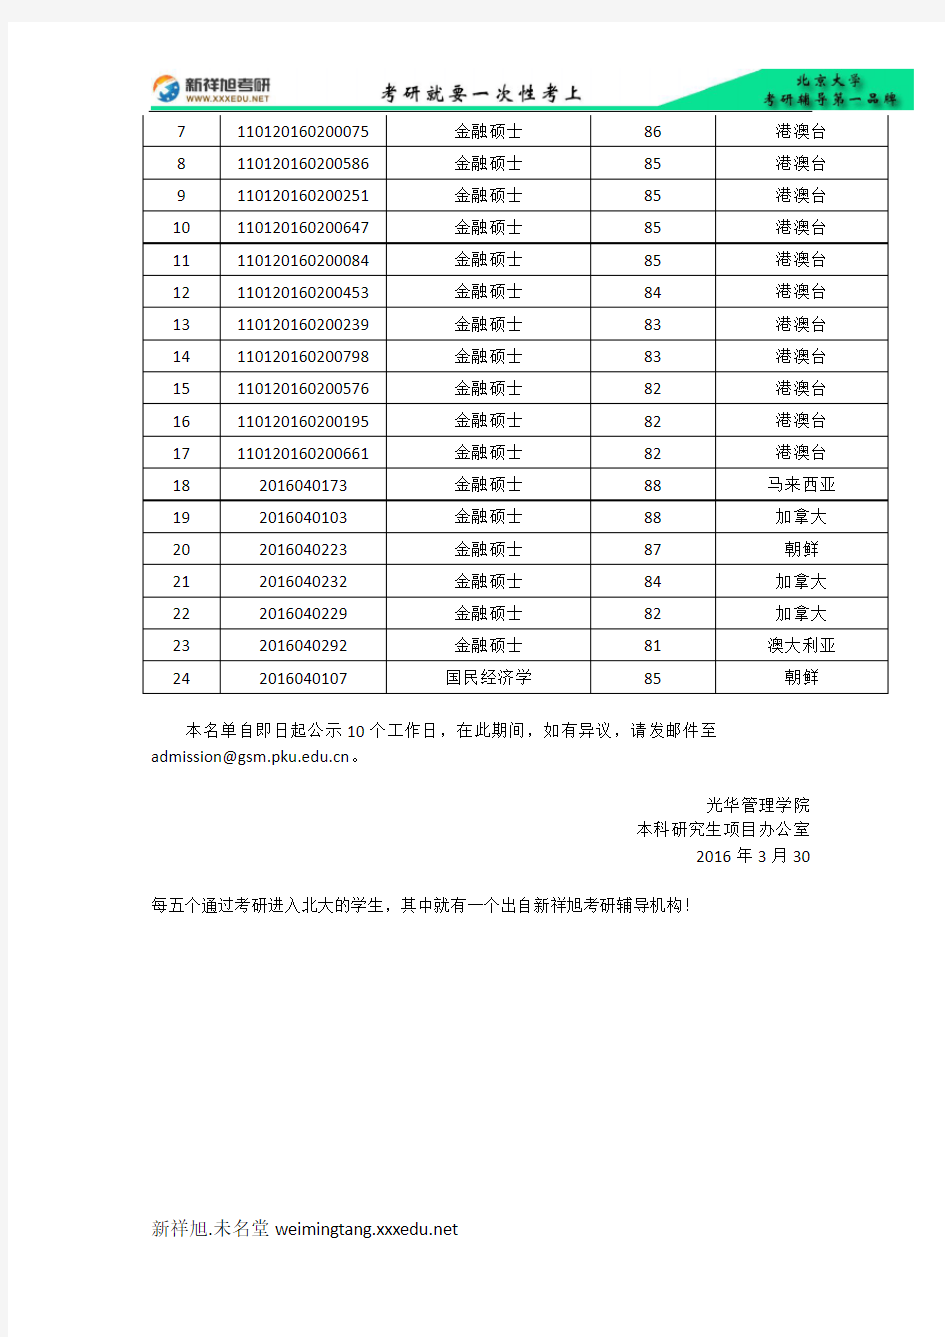 2016年北京大学光华管理学院考研录取名单公示